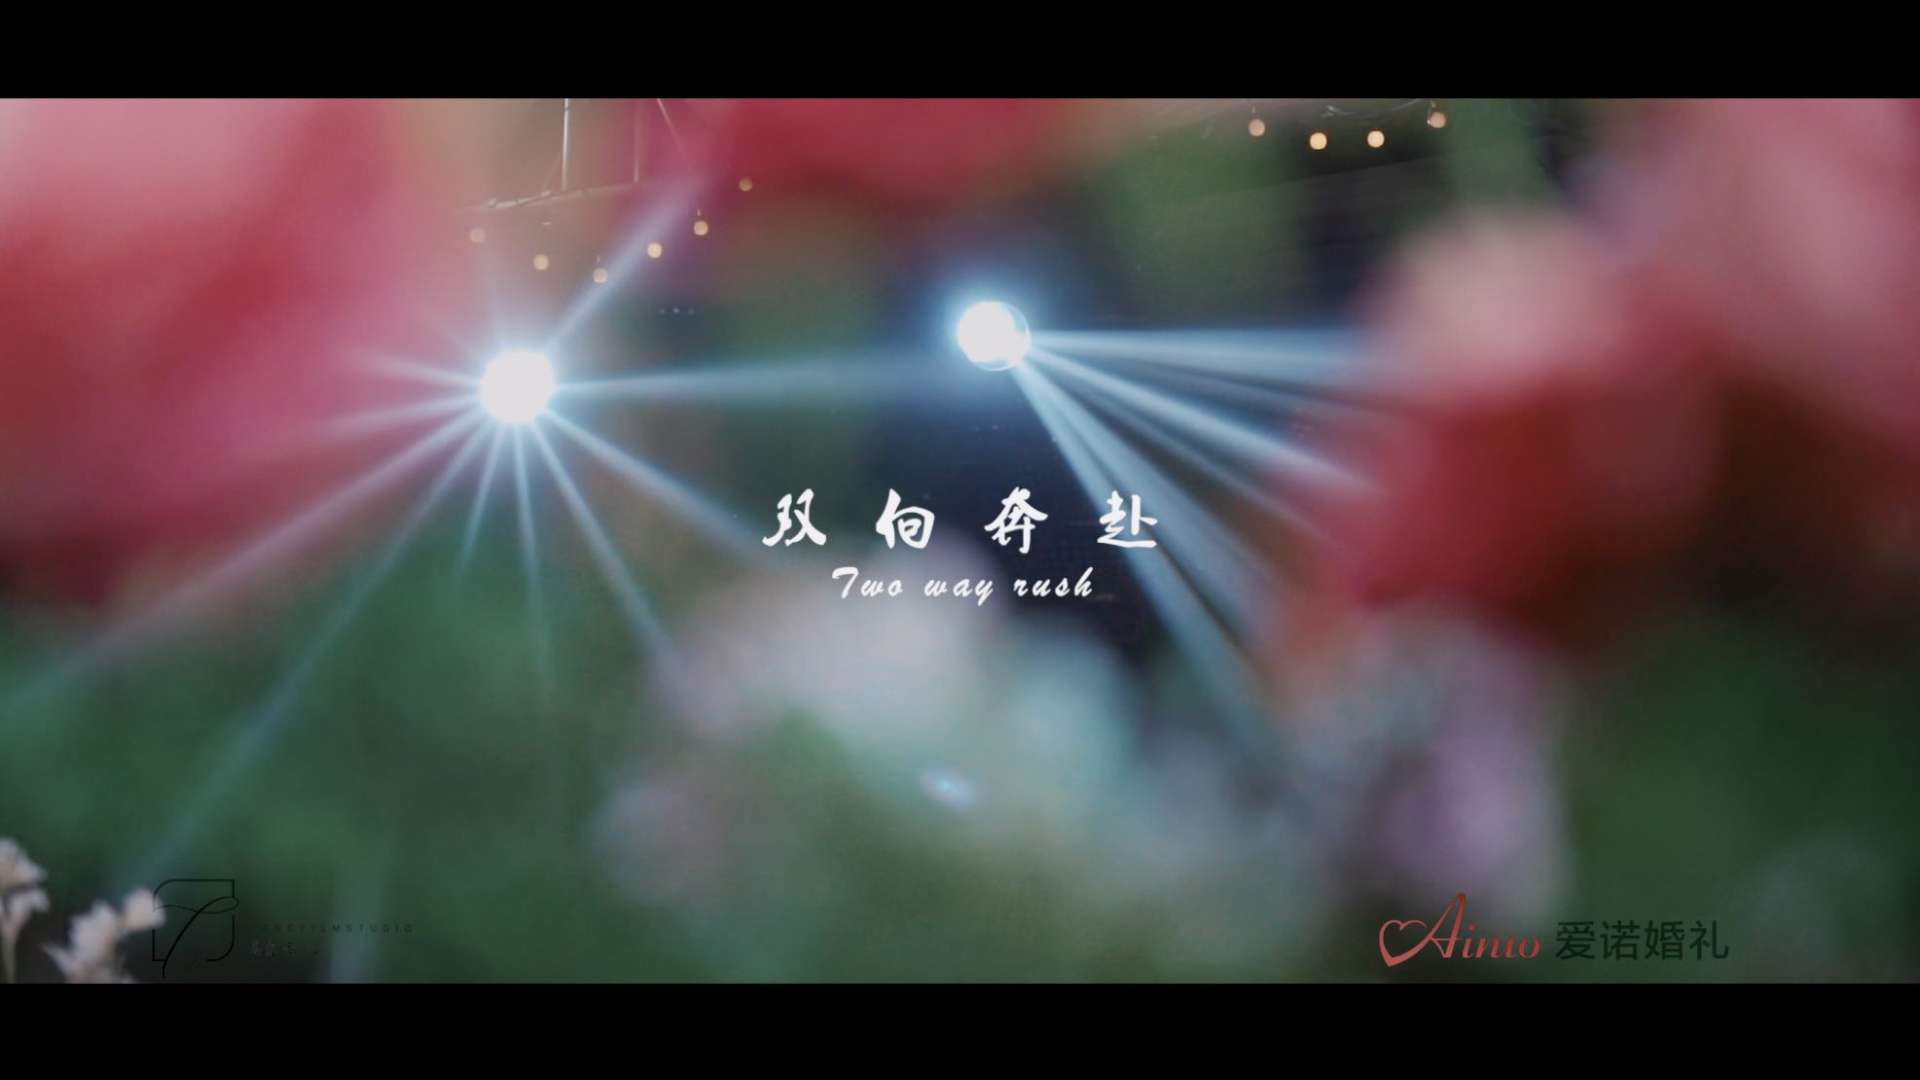 婚礼大电影《双向奔赴》-爱诺出品-22.9.17